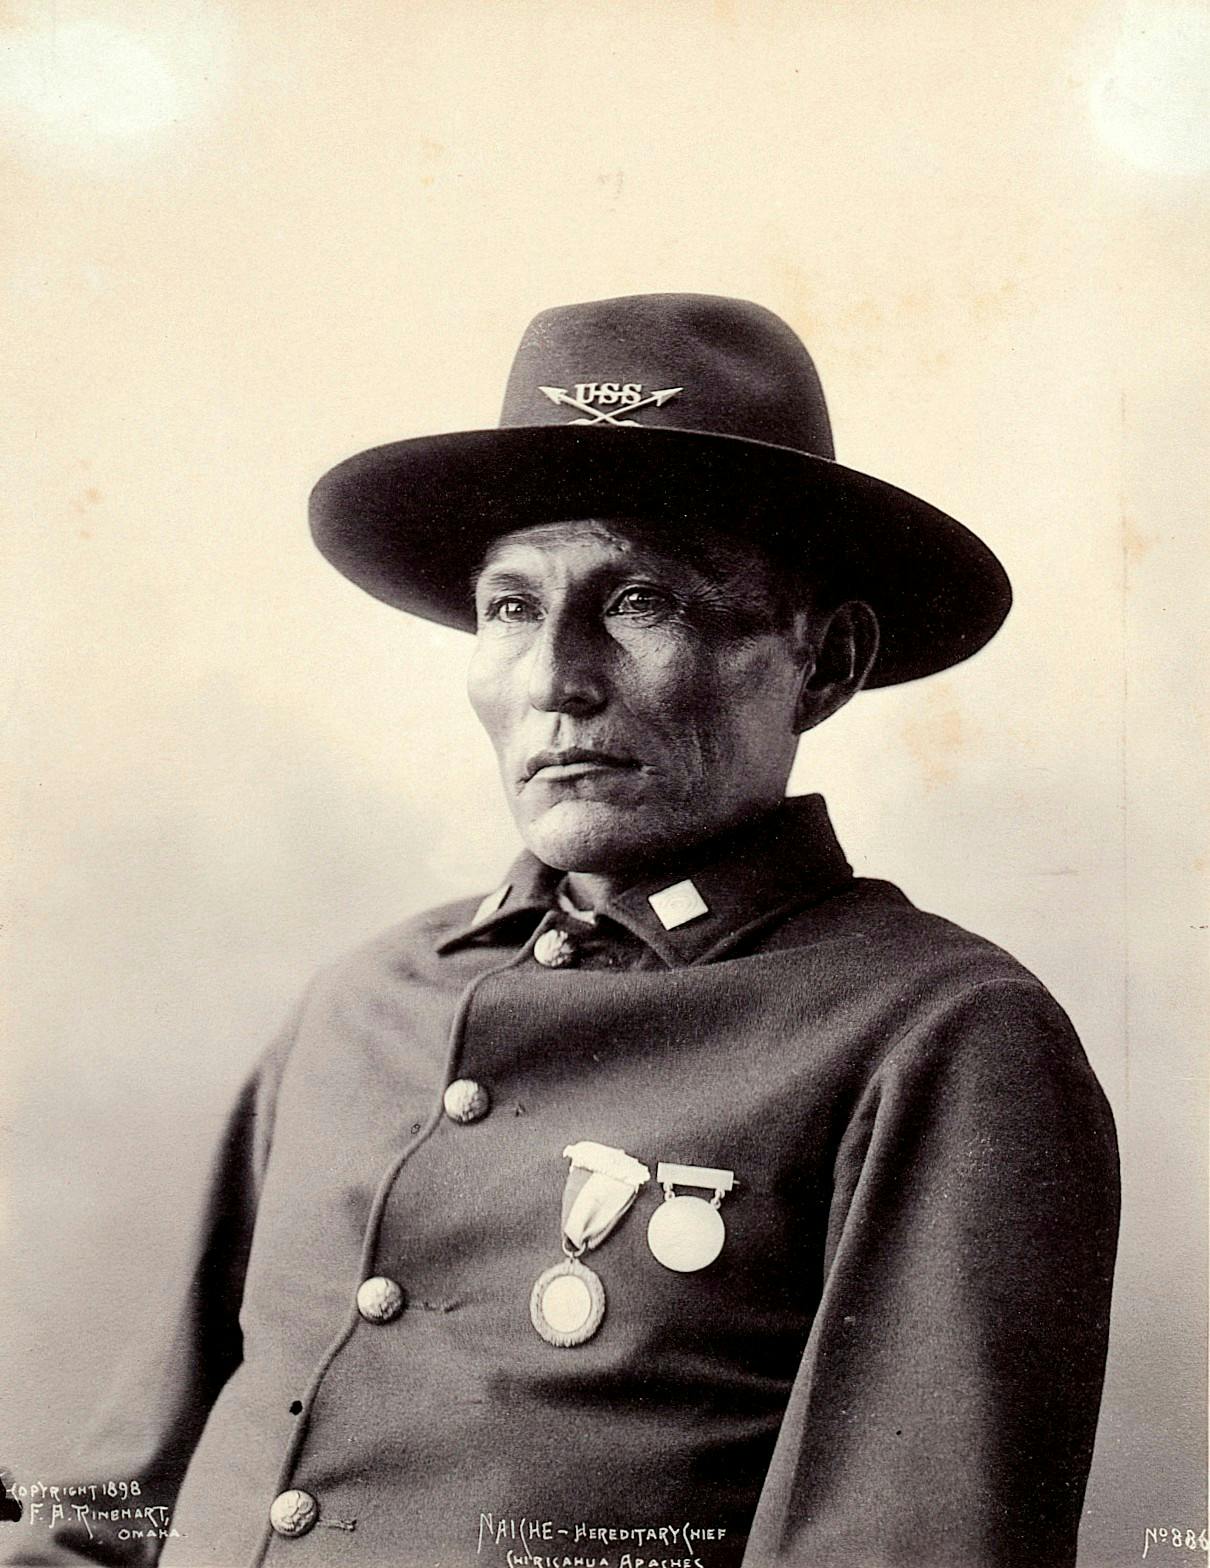 Naiche, hereditary chief of the Chiricahua